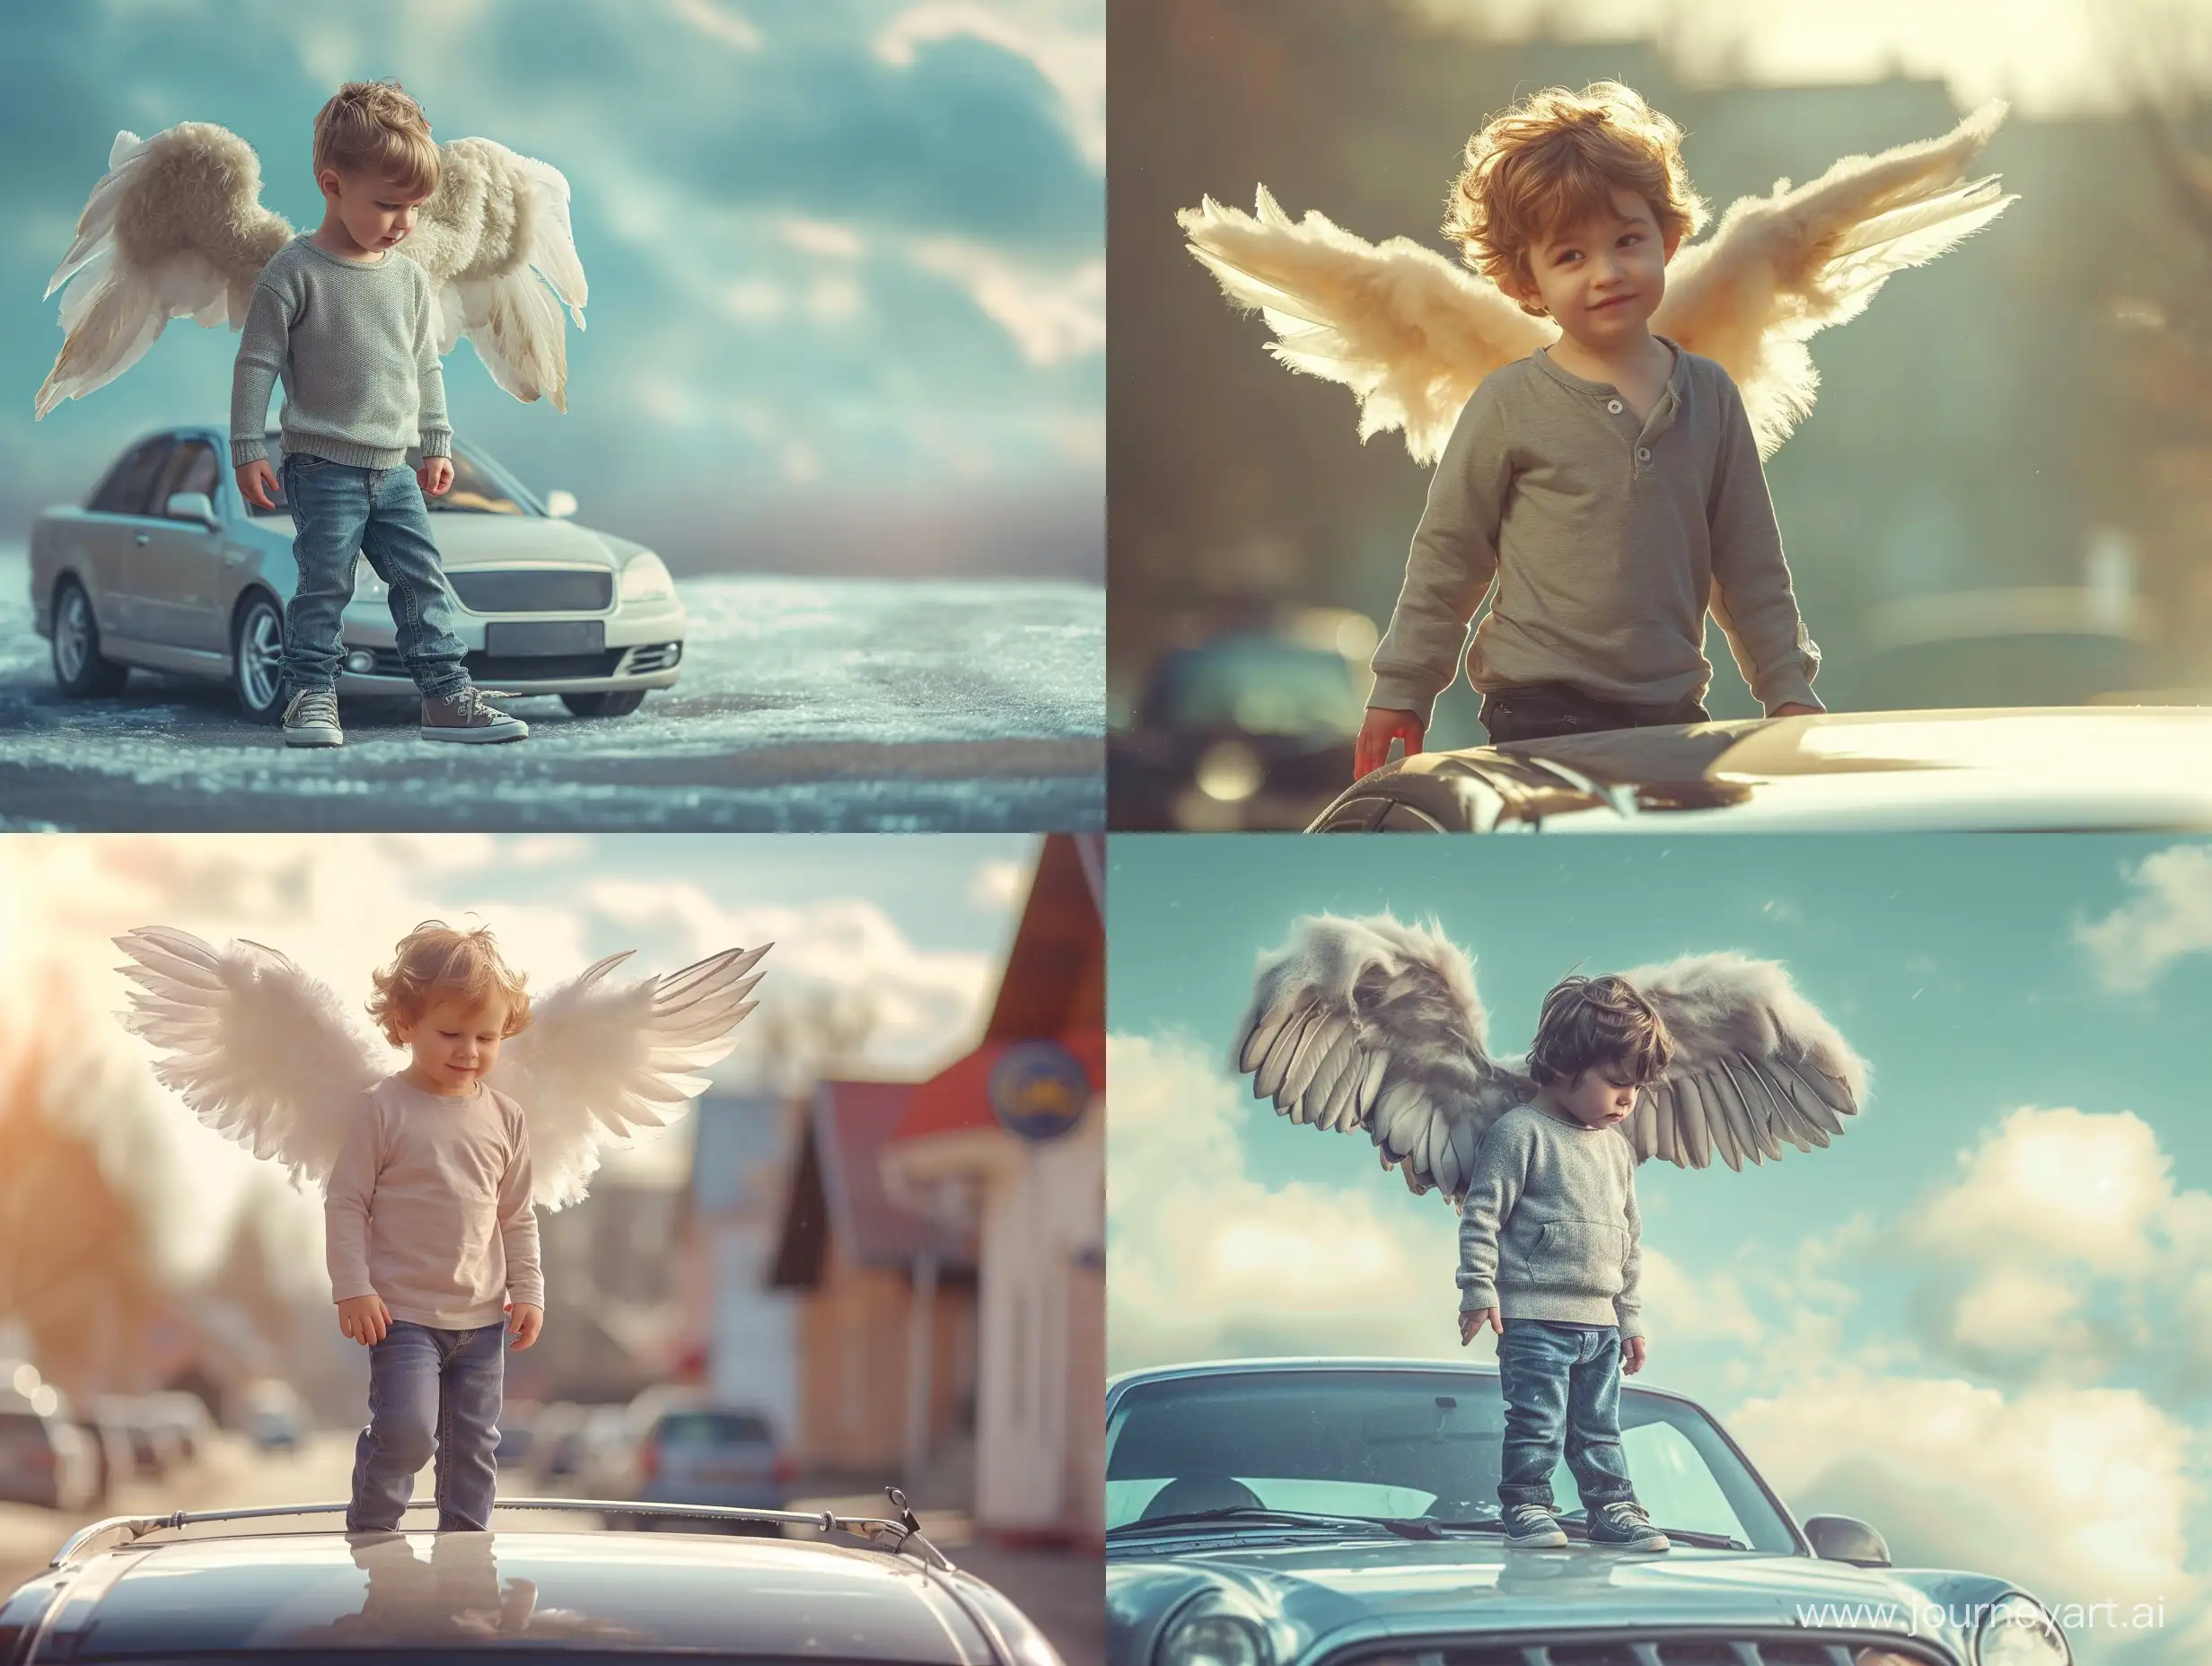 Enchanting-Winged-Boy-on-Car